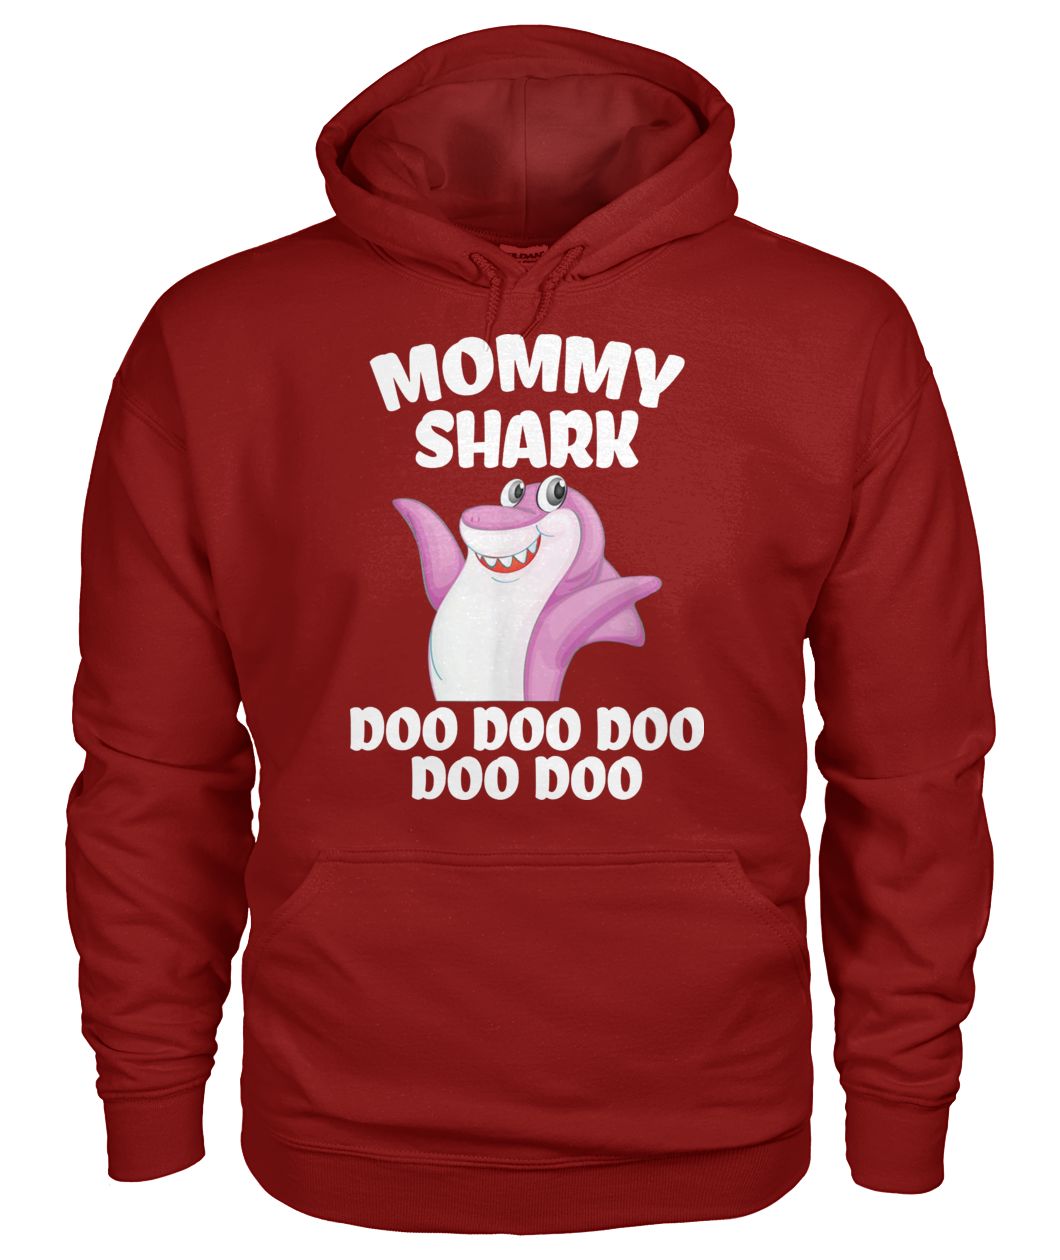 Mommy shark doo doo doo mother's day gildan hoodie